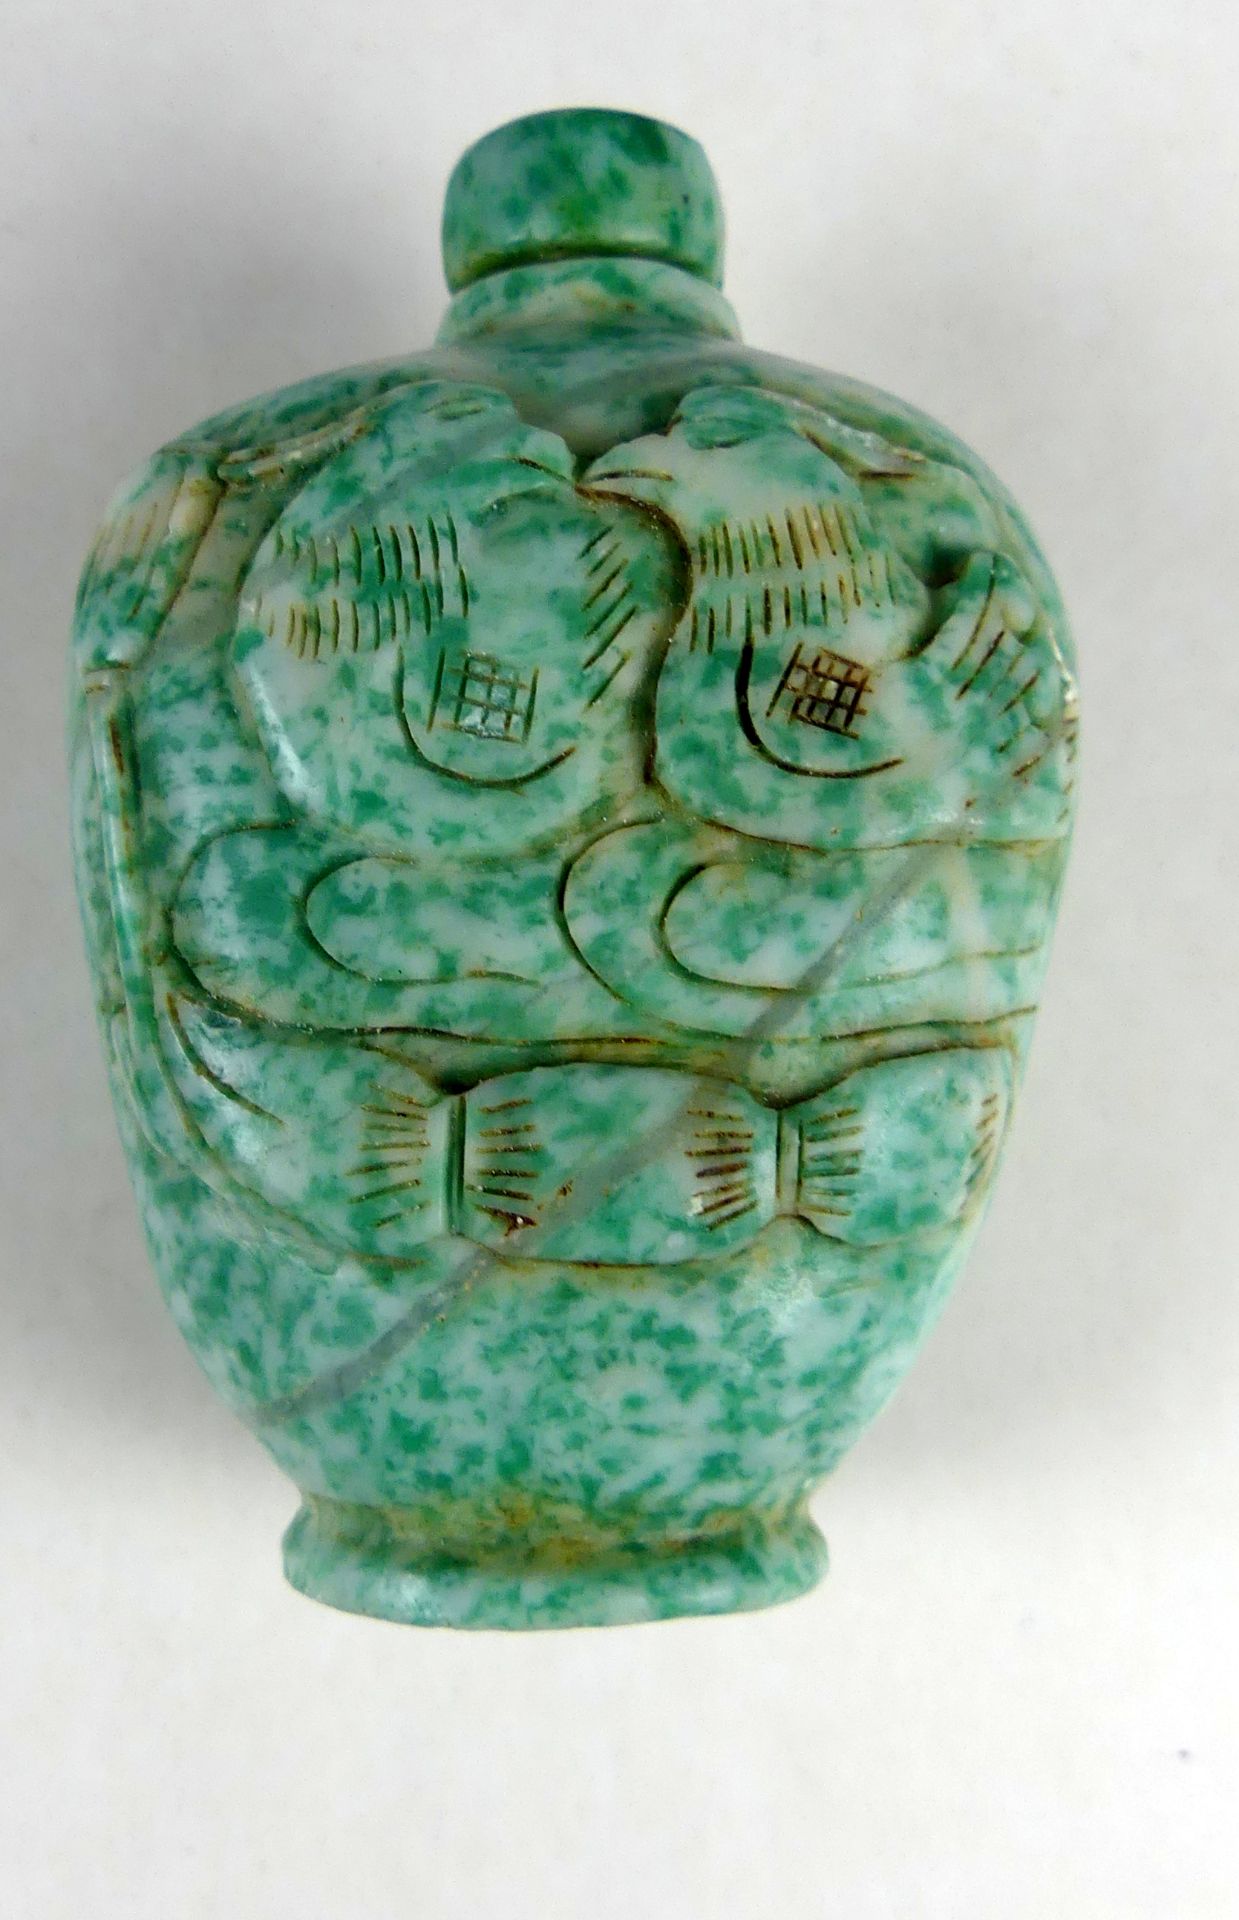 Snuffbottle, wohl Stein, grün-weiß mit Reliefs, Fledermaus/2 Vögel, H. ca. 7 cm,